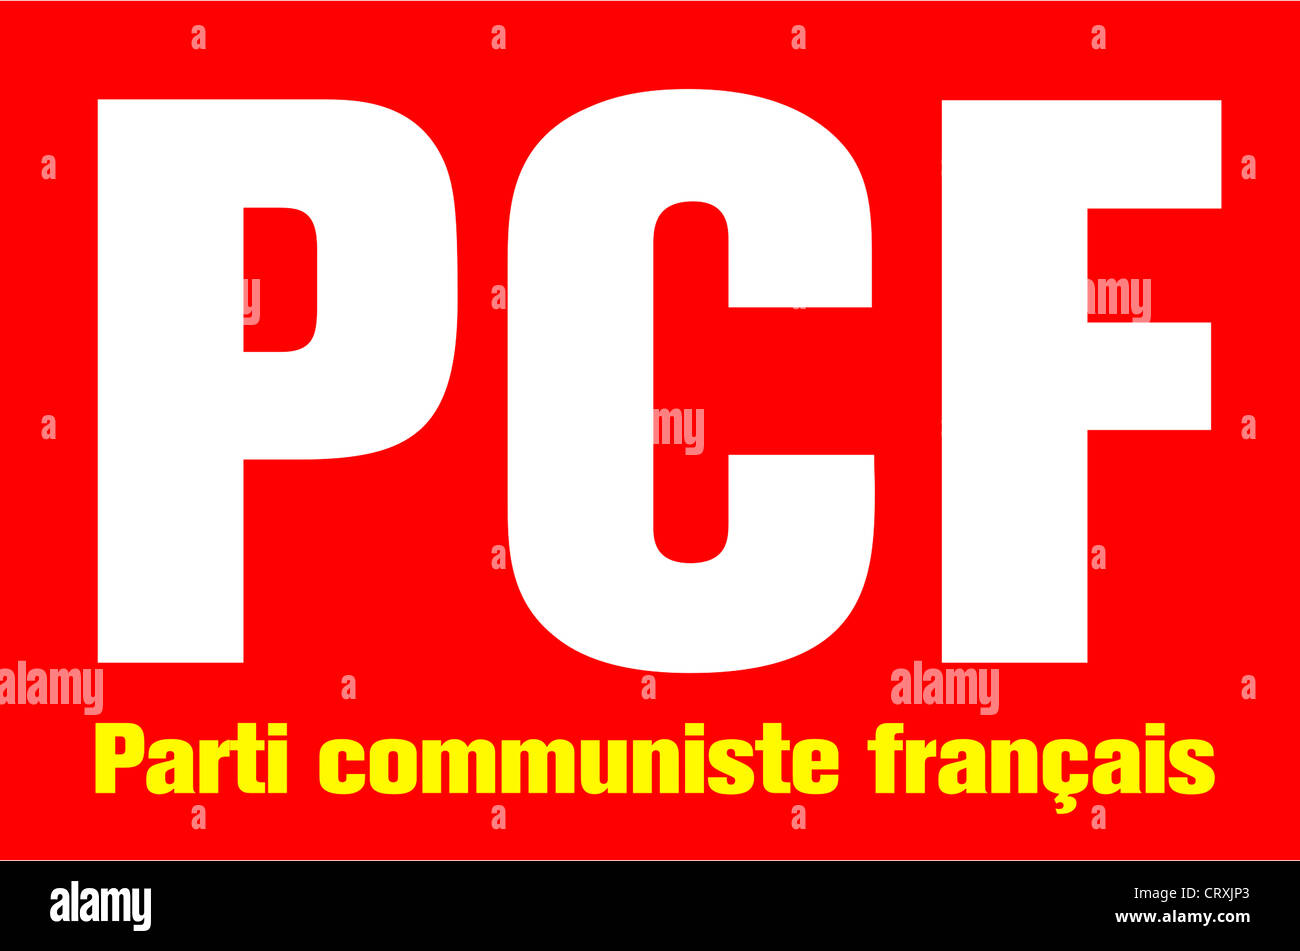 Logo du parti communiste français PCF - Parti communiste francais. Banque D'Images